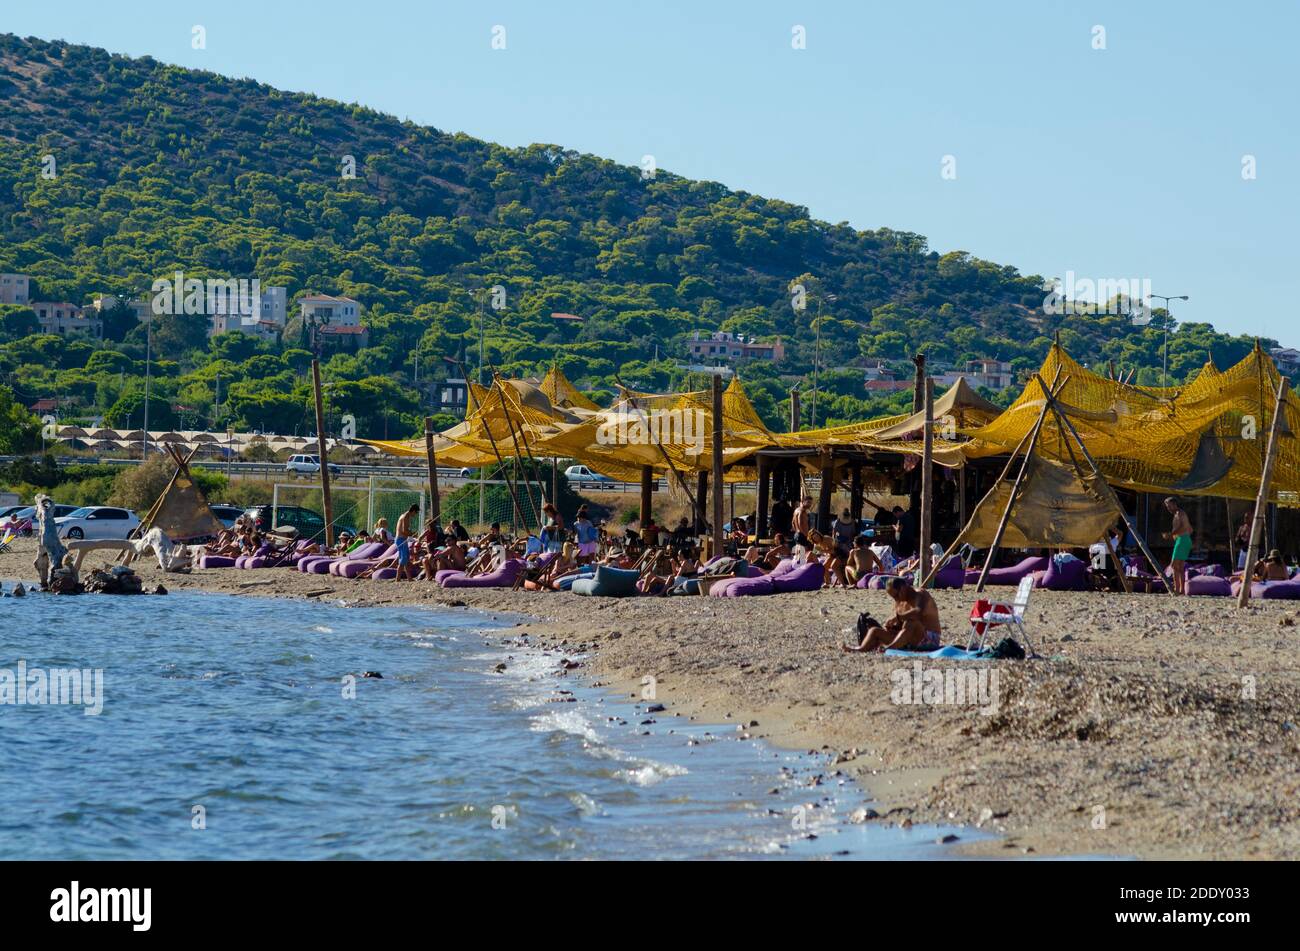 Gesamtansicht von Palaia Fochaia an der Athenäischen Riviera in Attica Griechenland. Menschen entspannen am Strand - Foto: Geopix Stockfoto